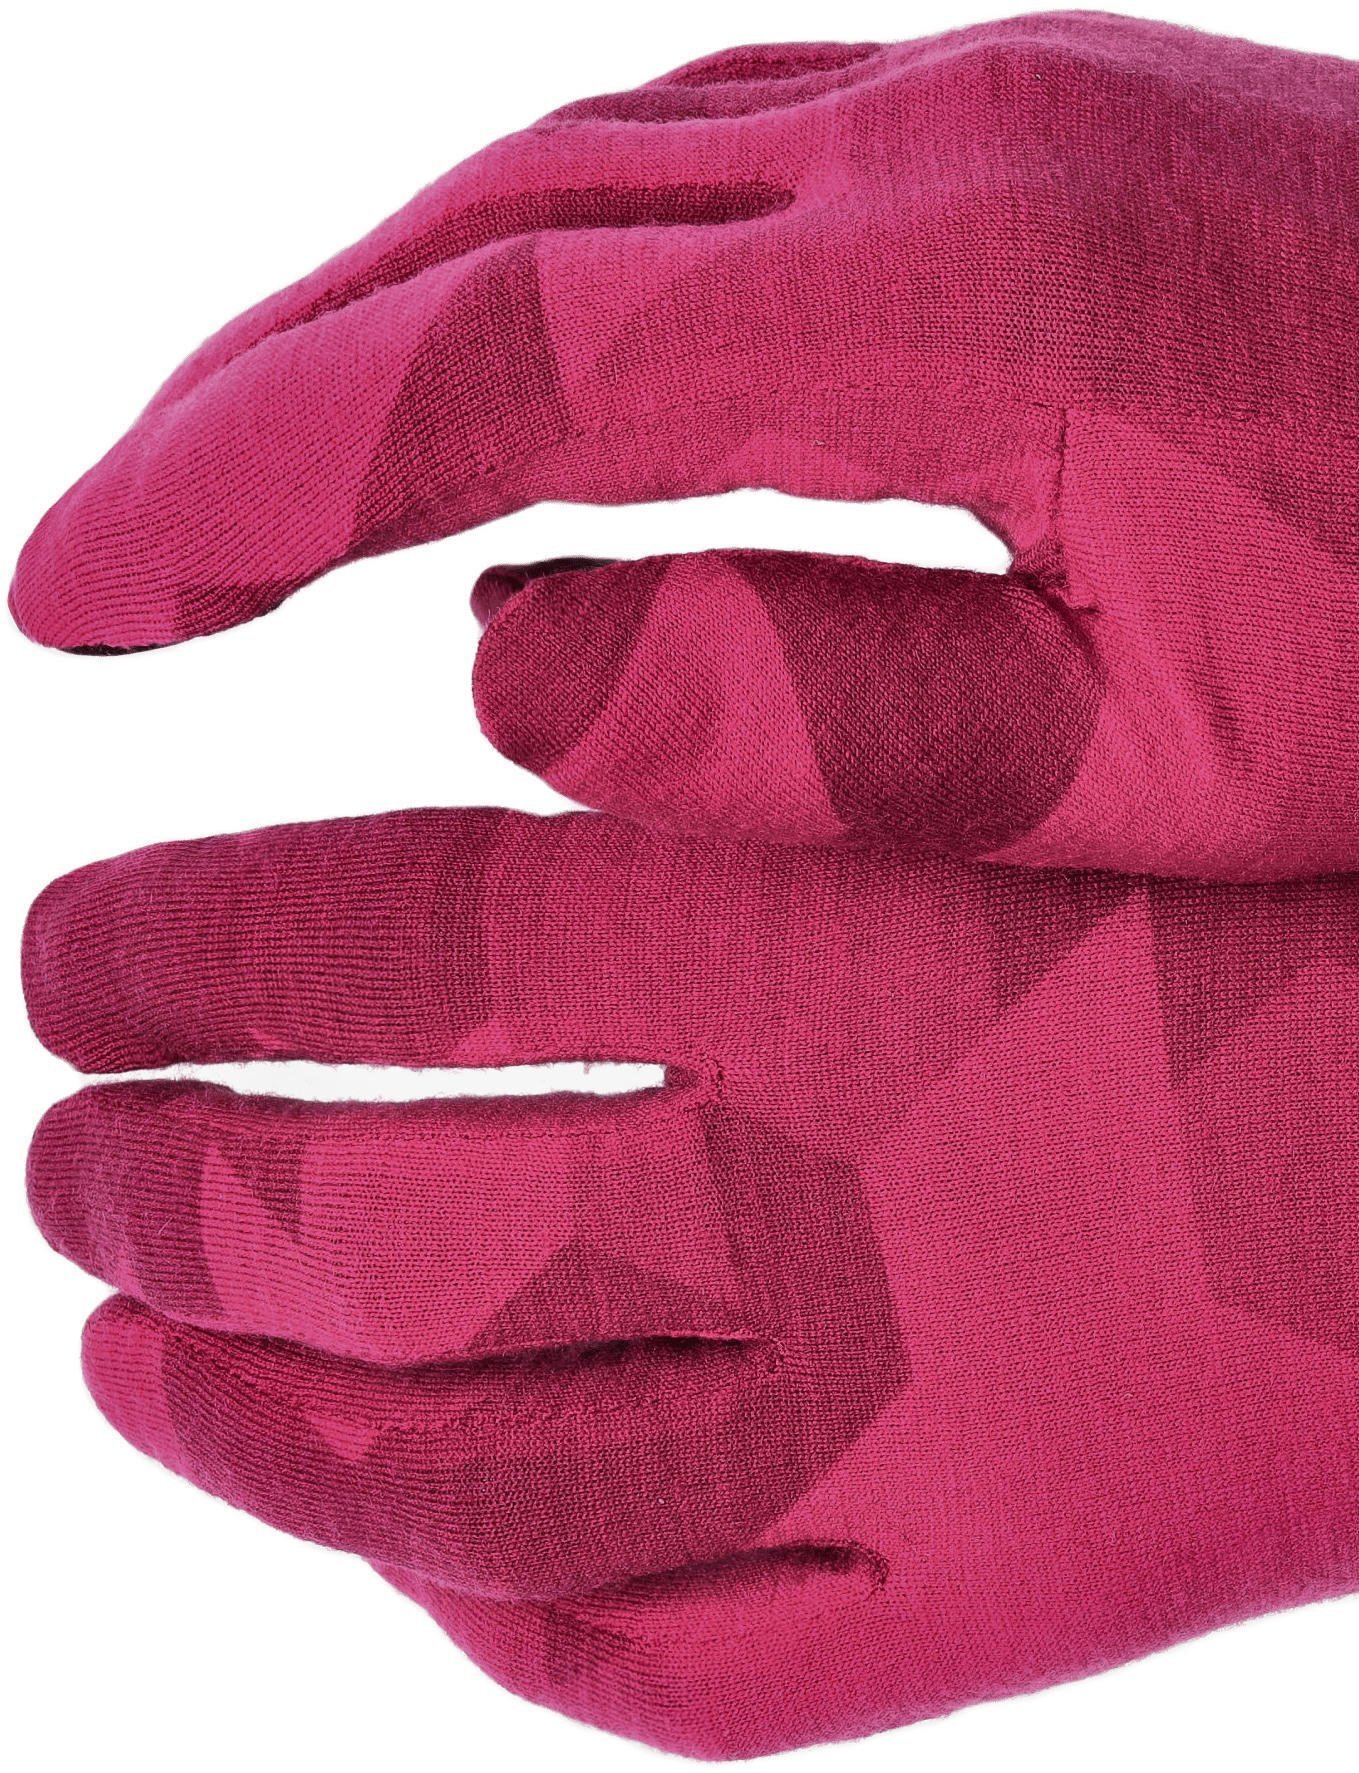 Рукавички жіночі Salewa Cristallo W Gloves 28514 6319 5/XS рожевийфото4